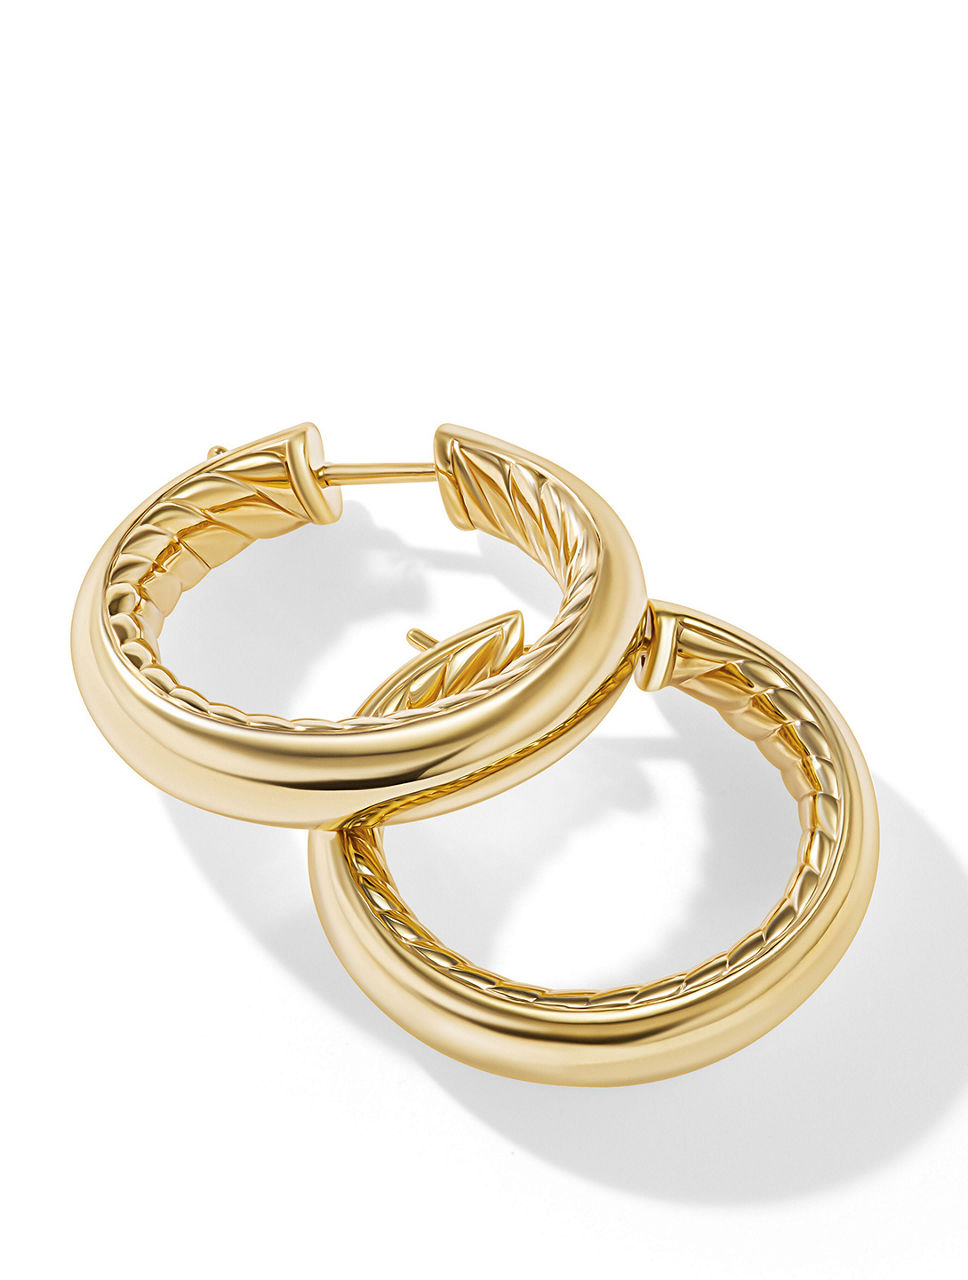 Dy Mercer™ Hoop Earrings In 18k Yellow Gold, 25.4mm